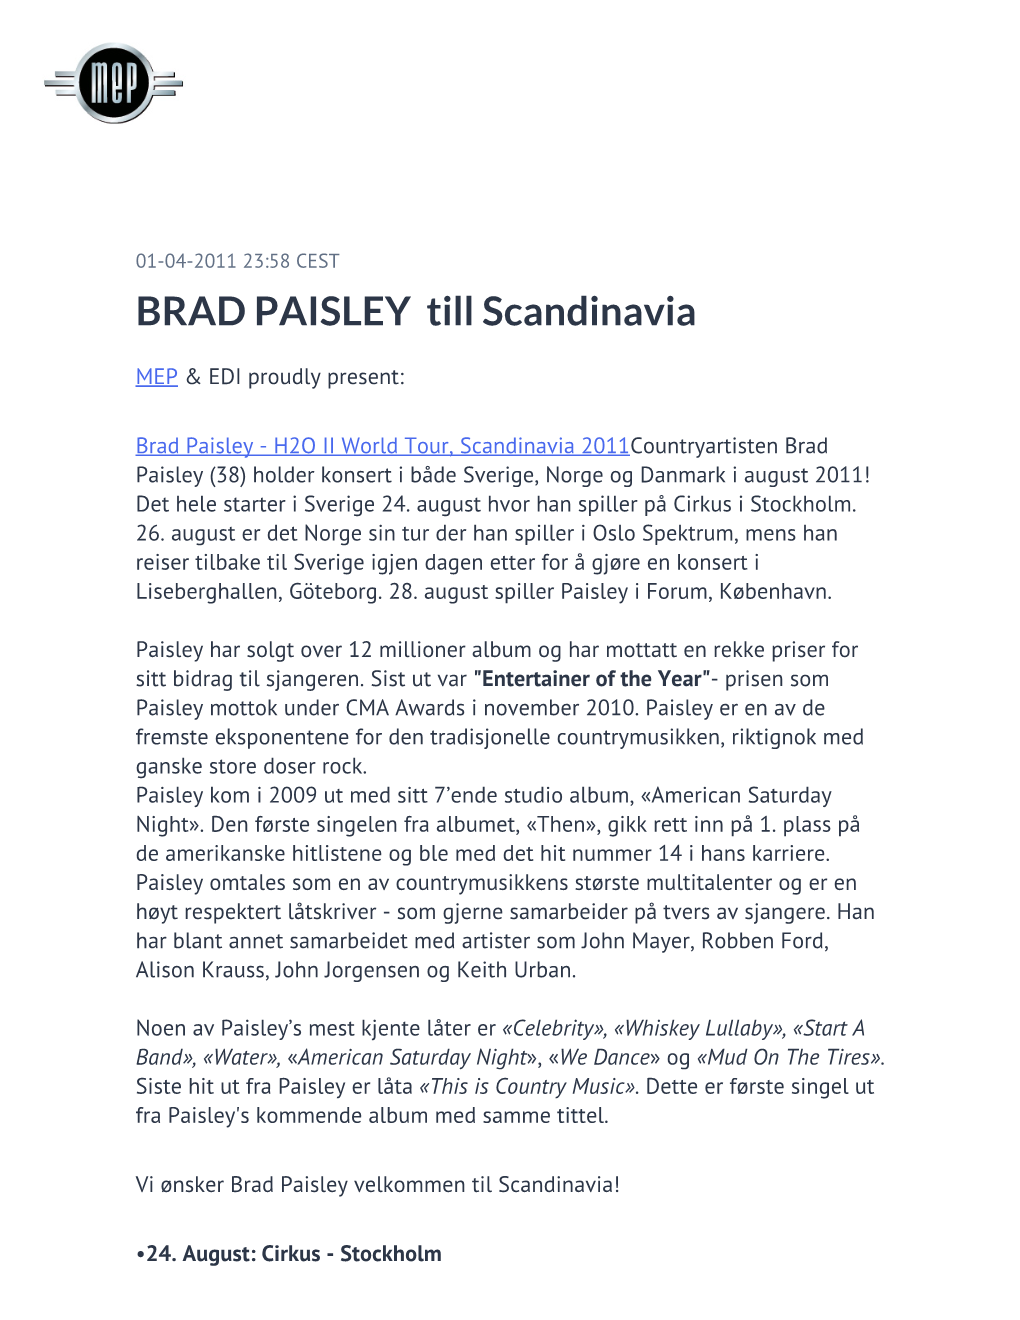 BRAD PAISLEY Till Scandinavia